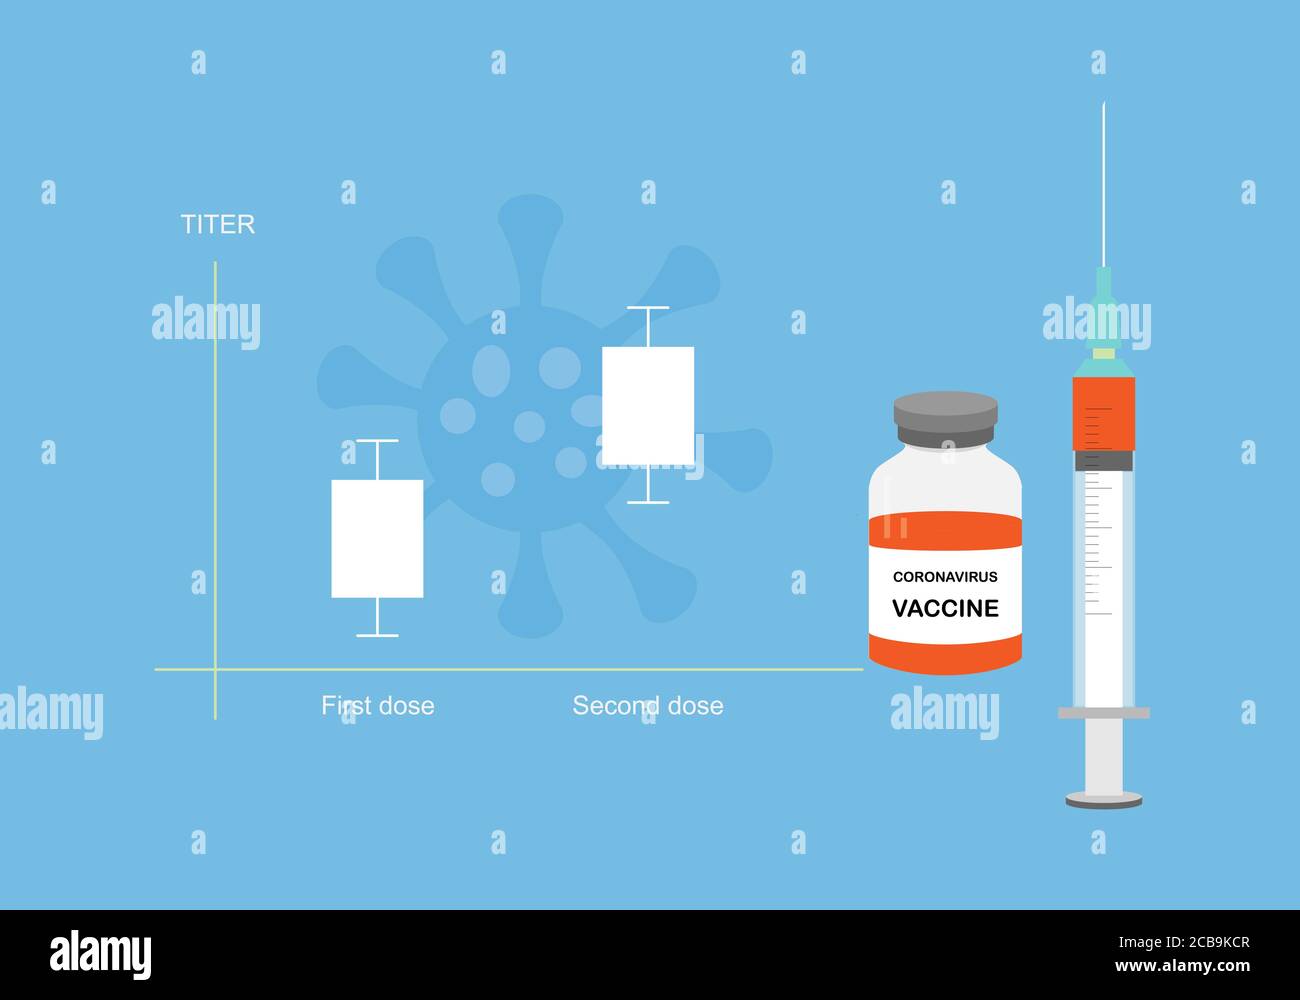 Konzepte von Coronavirus- oder Covid-19-Impfstoff und Antikörpertiter. Titer steigt nach der zweiten Injektion an. Abbildung von Spritze, Impfstoffflasche und g Stock Vektor